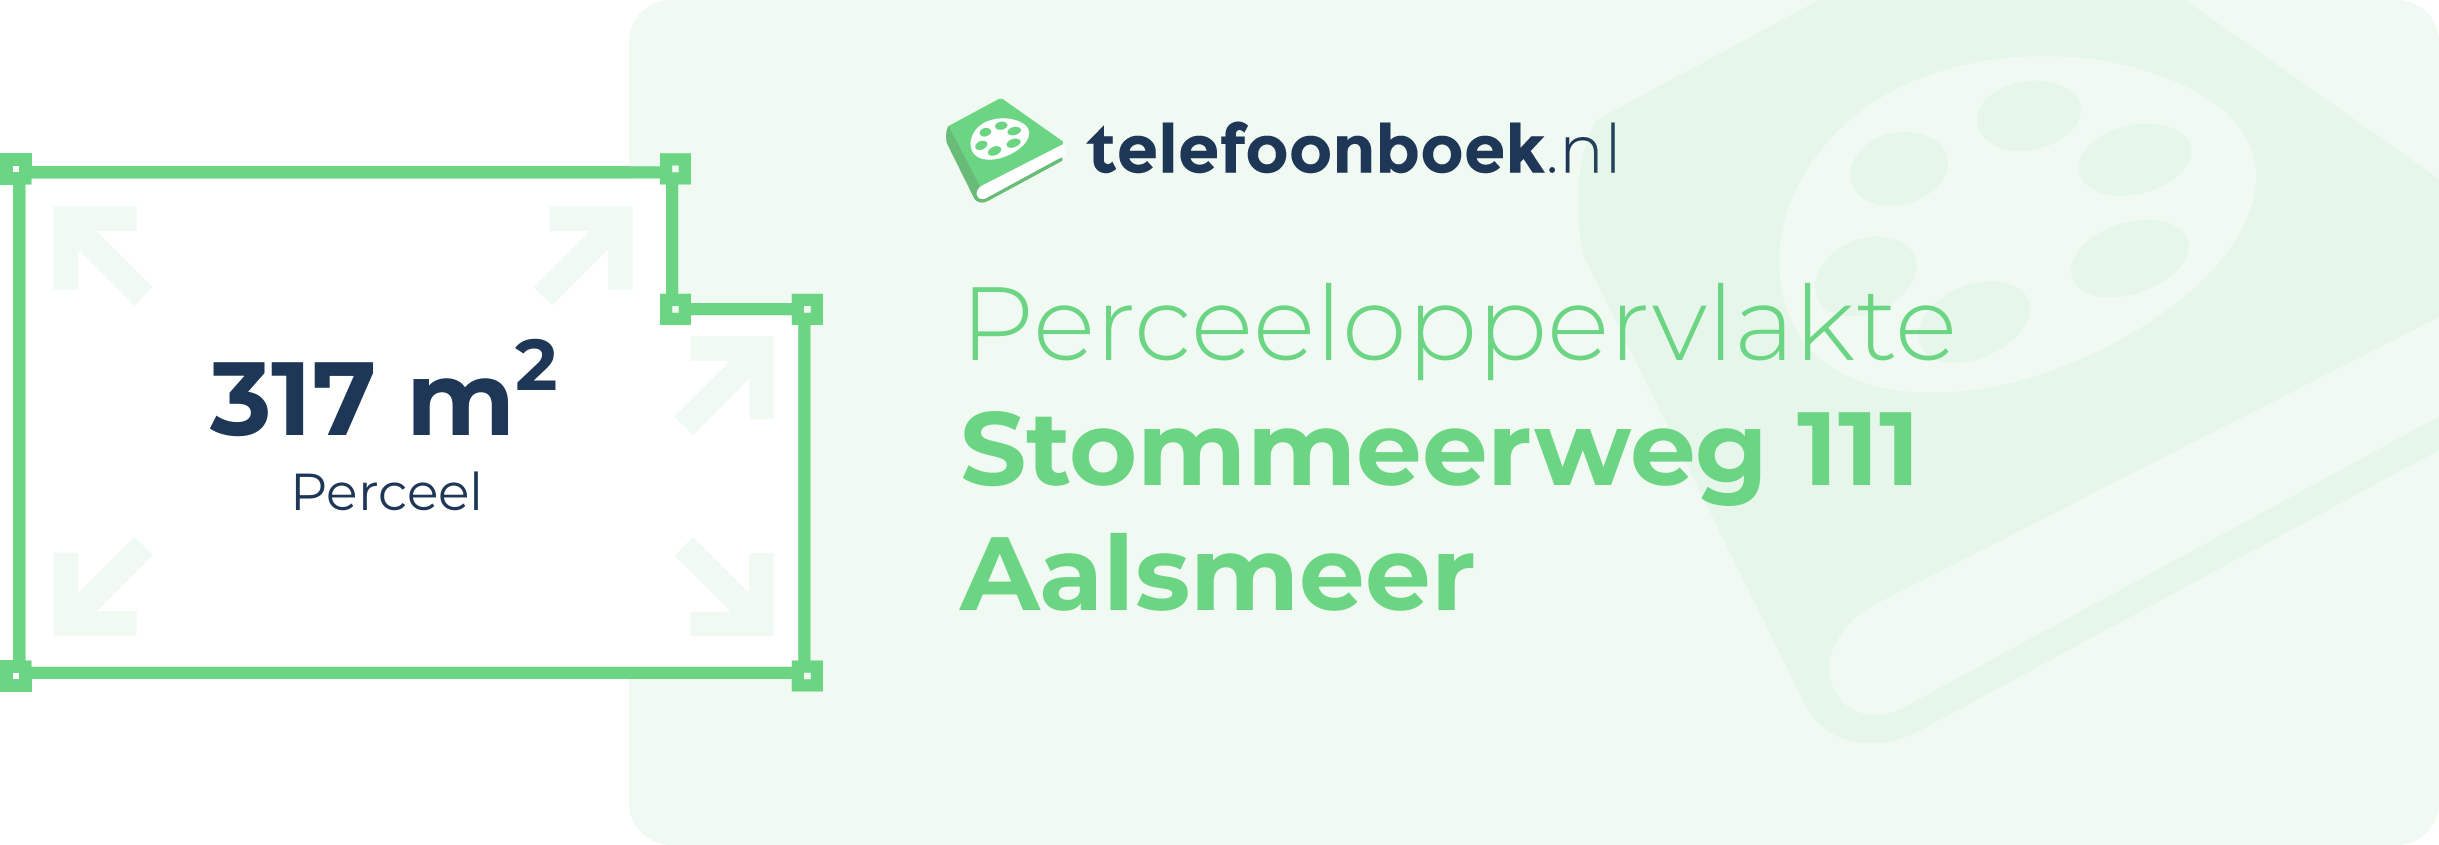 Perceeloppervlakte Stommeerweg 111 Aalsmeer